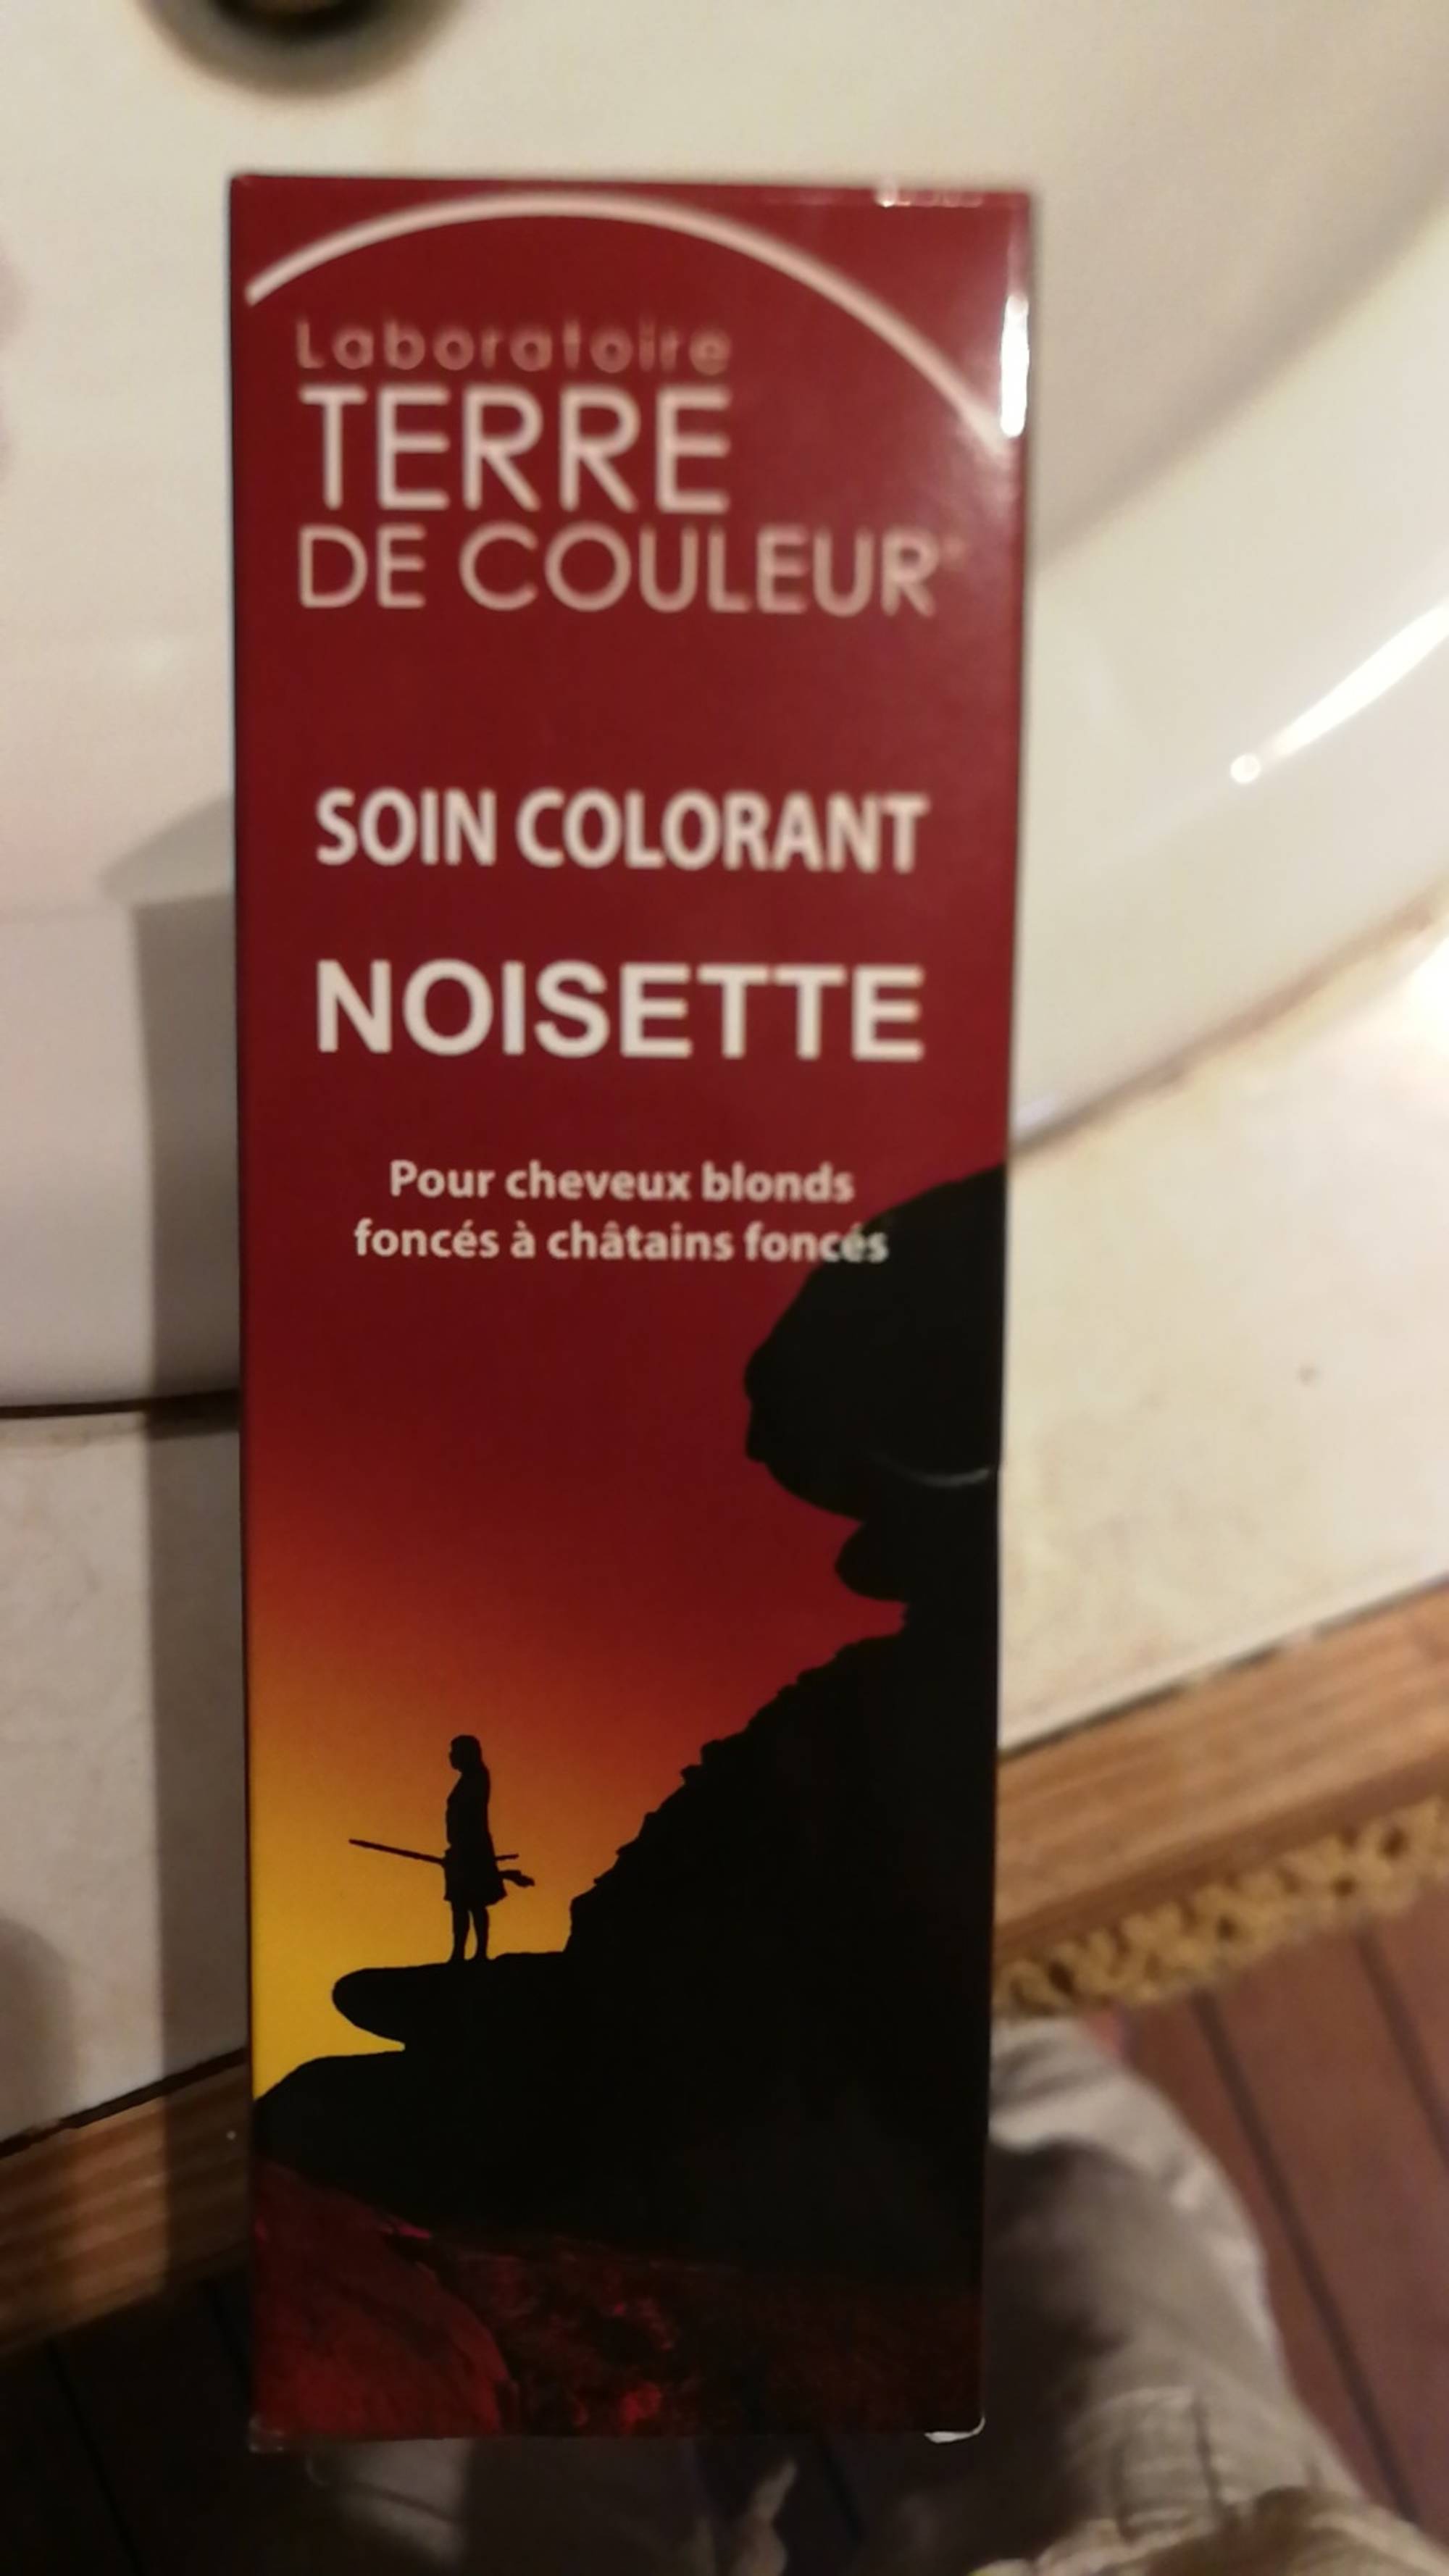 TERRE DE COULEUR - Soin colorant noisette